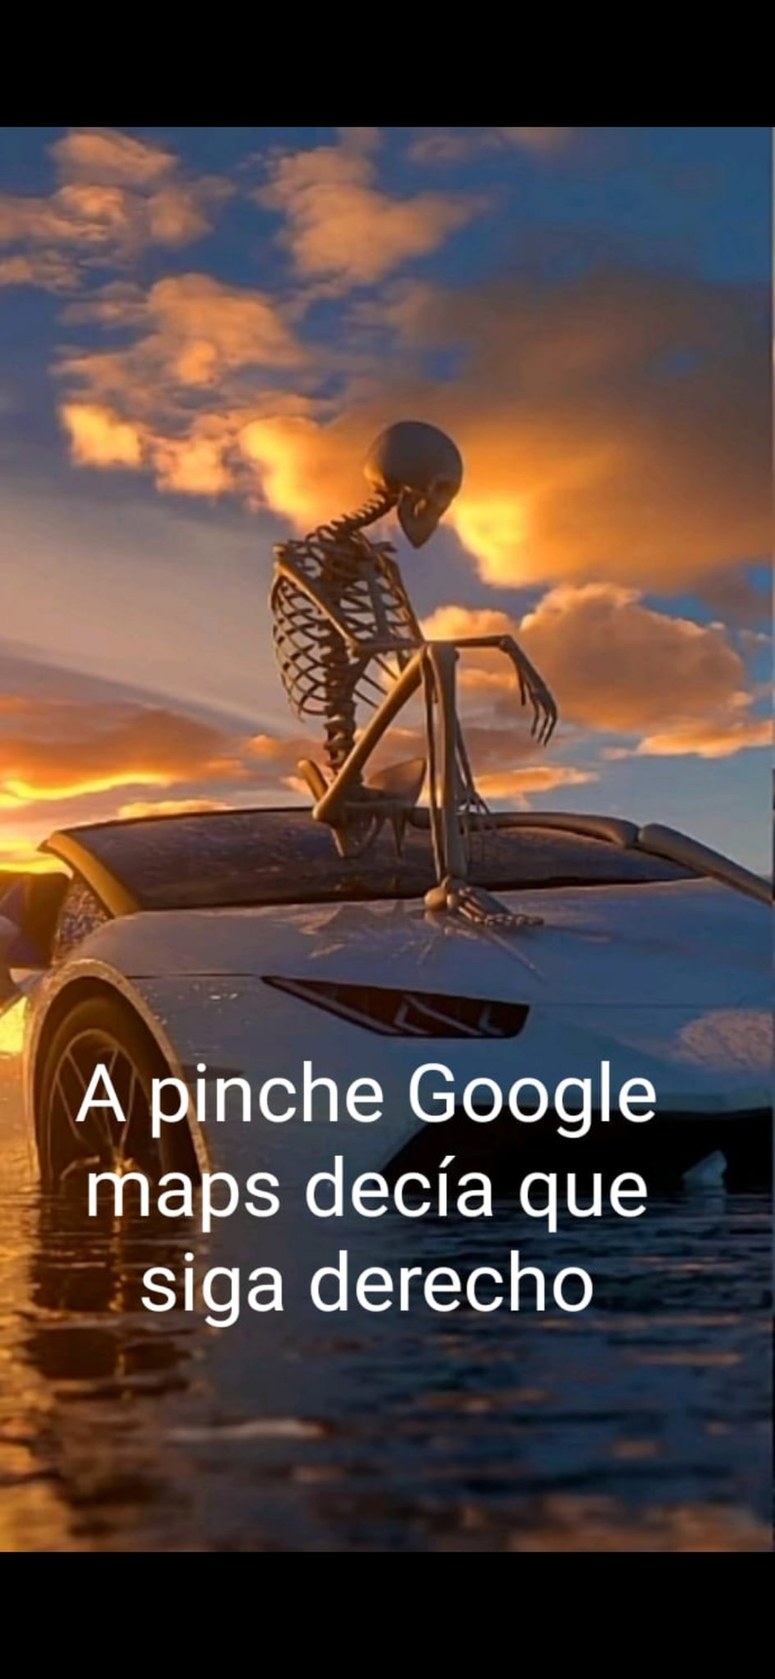 A pinche Google maps - meme